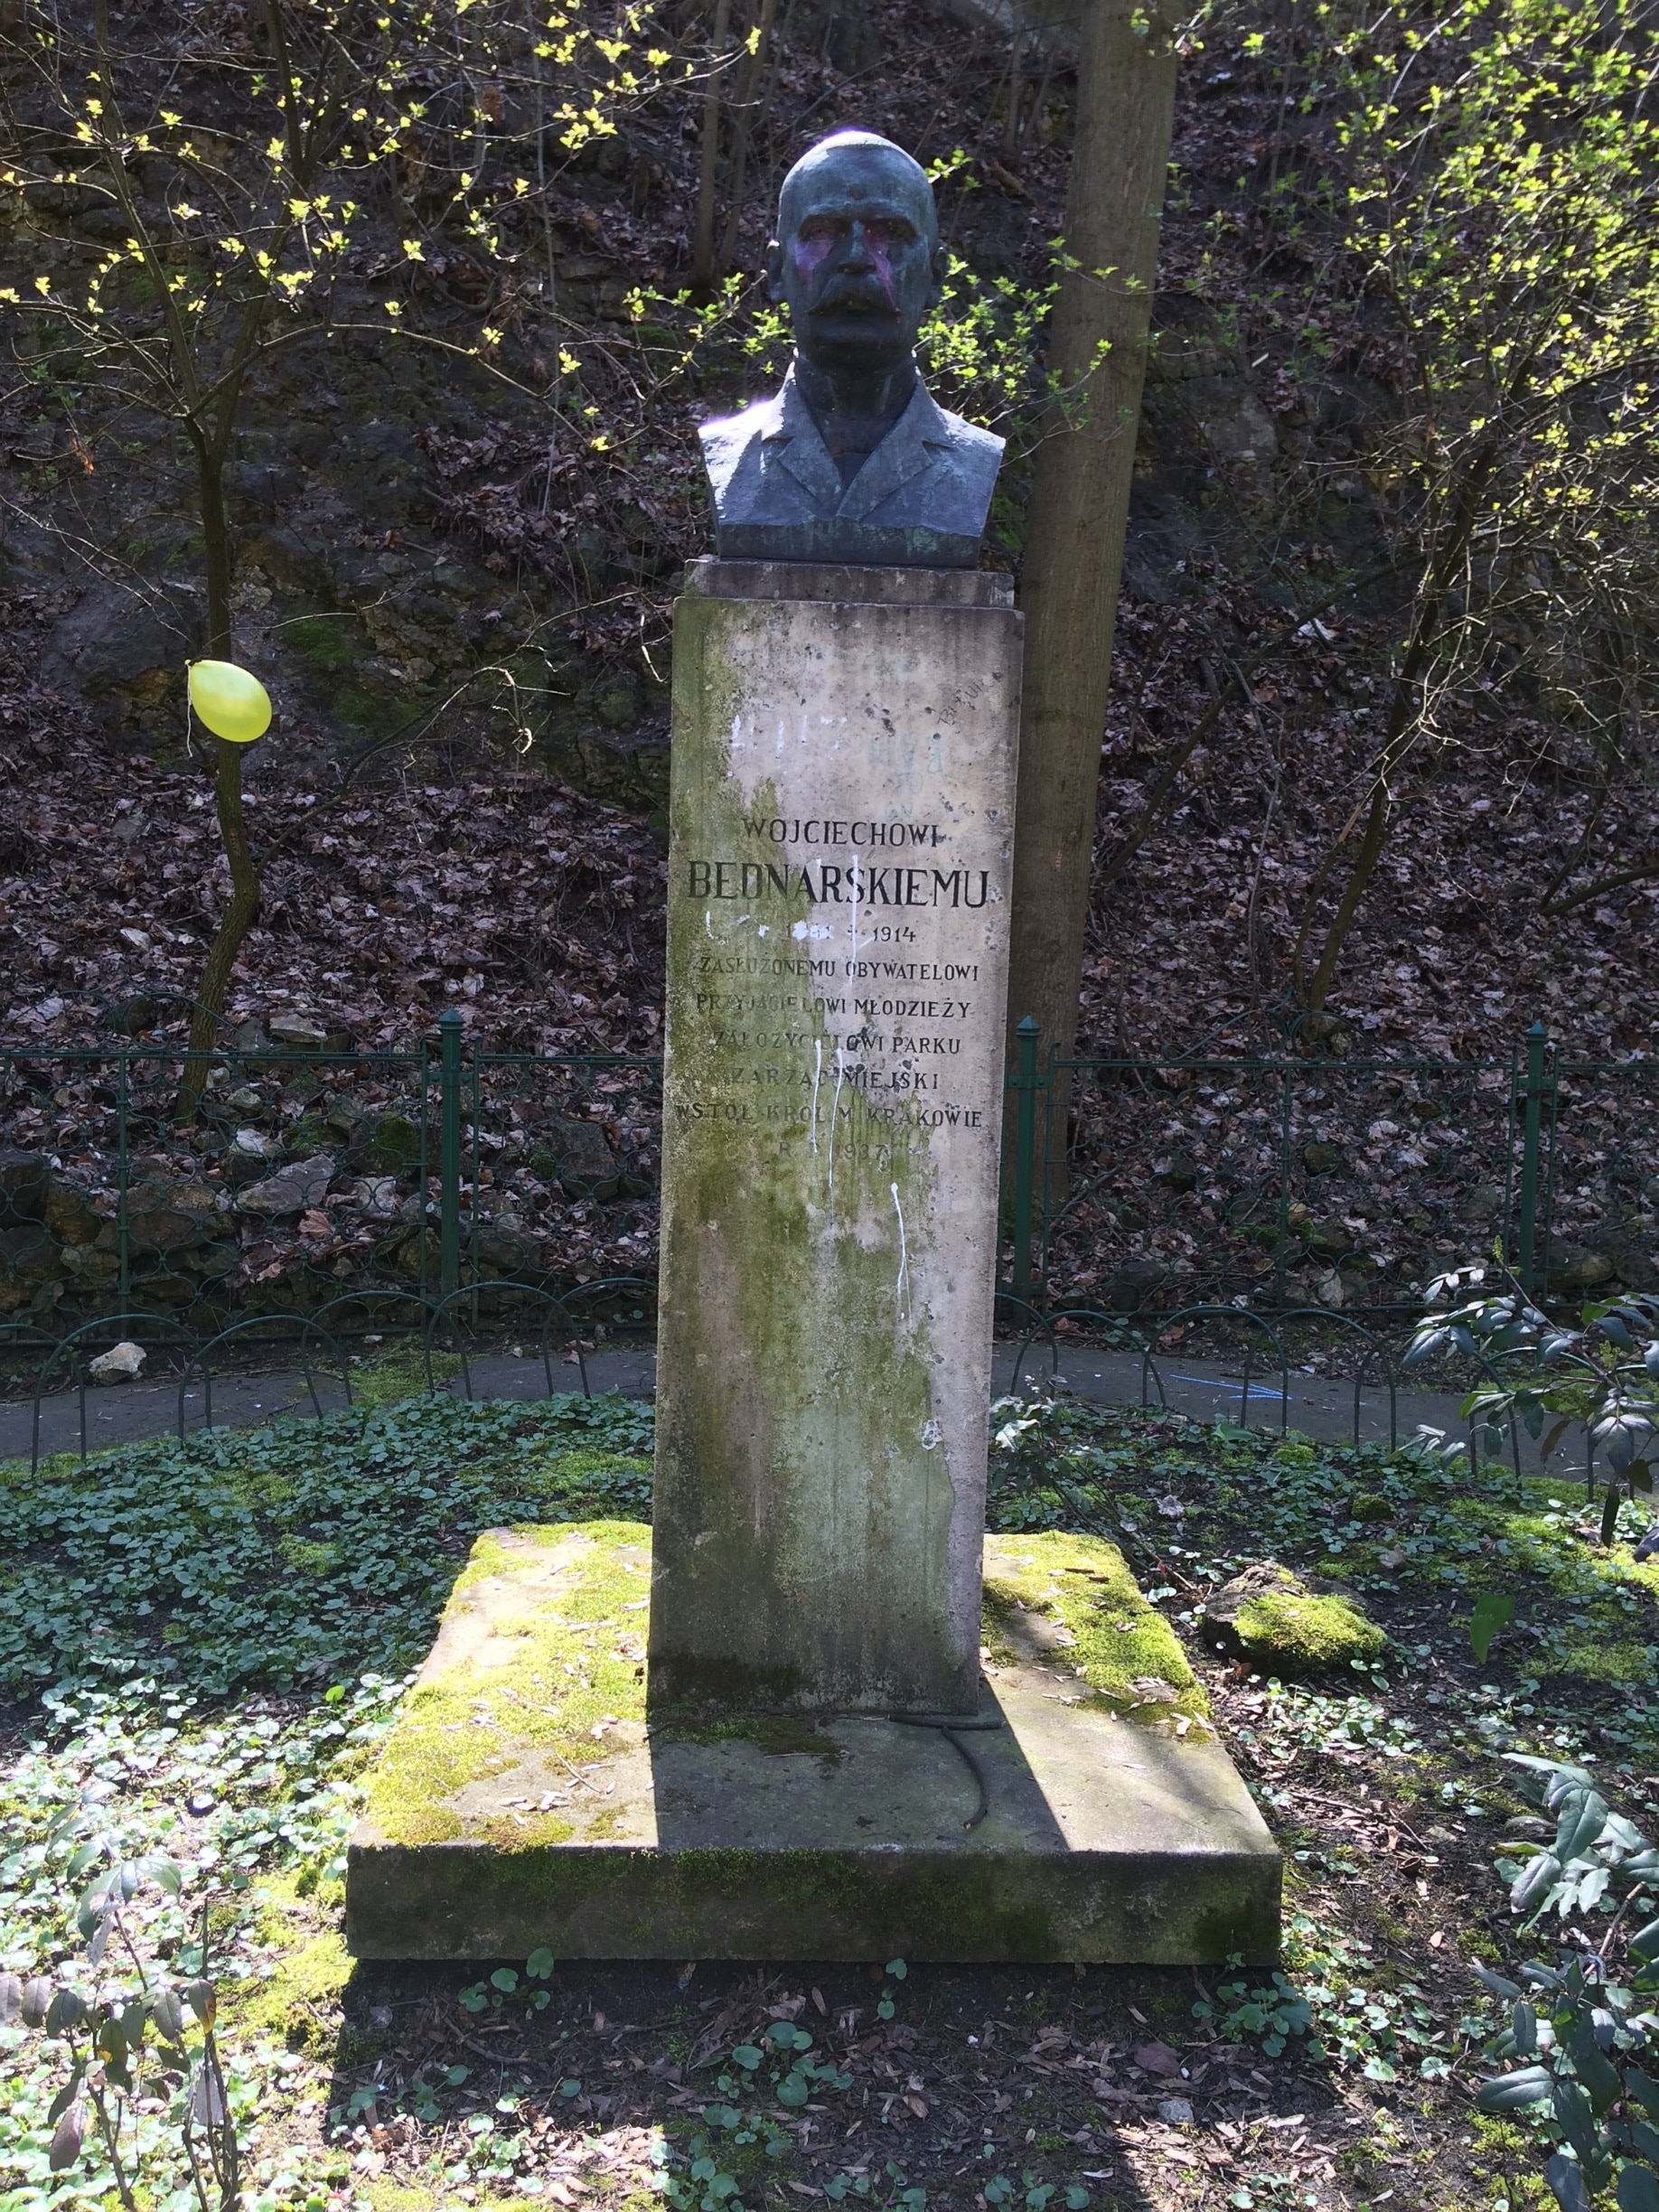 Popiersie Wojciecha Bednarskiego w parku nazwanym jego nazwiskiem. Kraków Podgórze. 